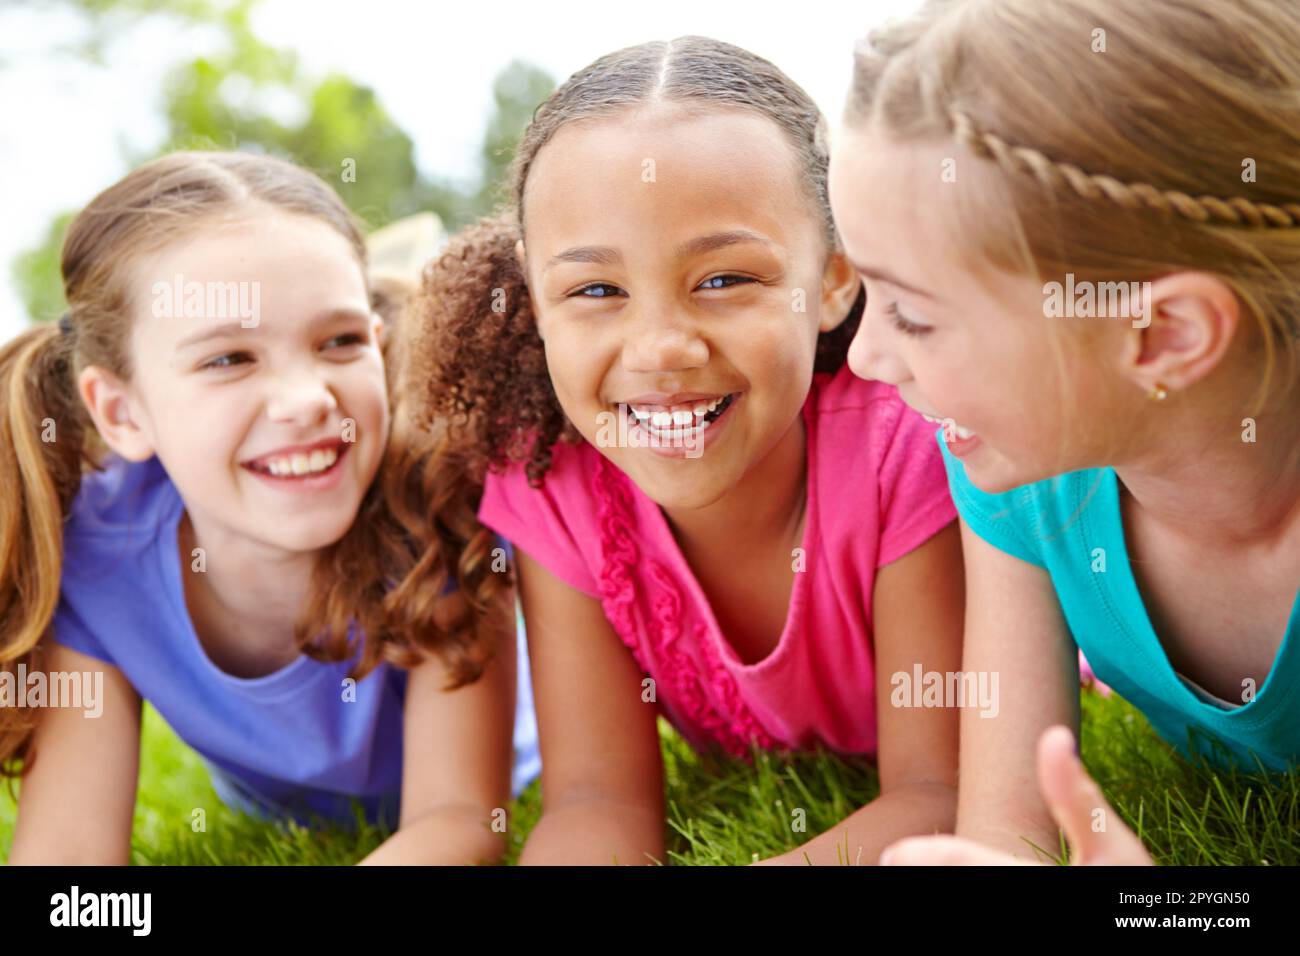 Theyre così un trio formidabile. Tre ragazze multietniche sdraiate sull'erba in un parco sorridendo alla macchina fotografica. Foto Stock